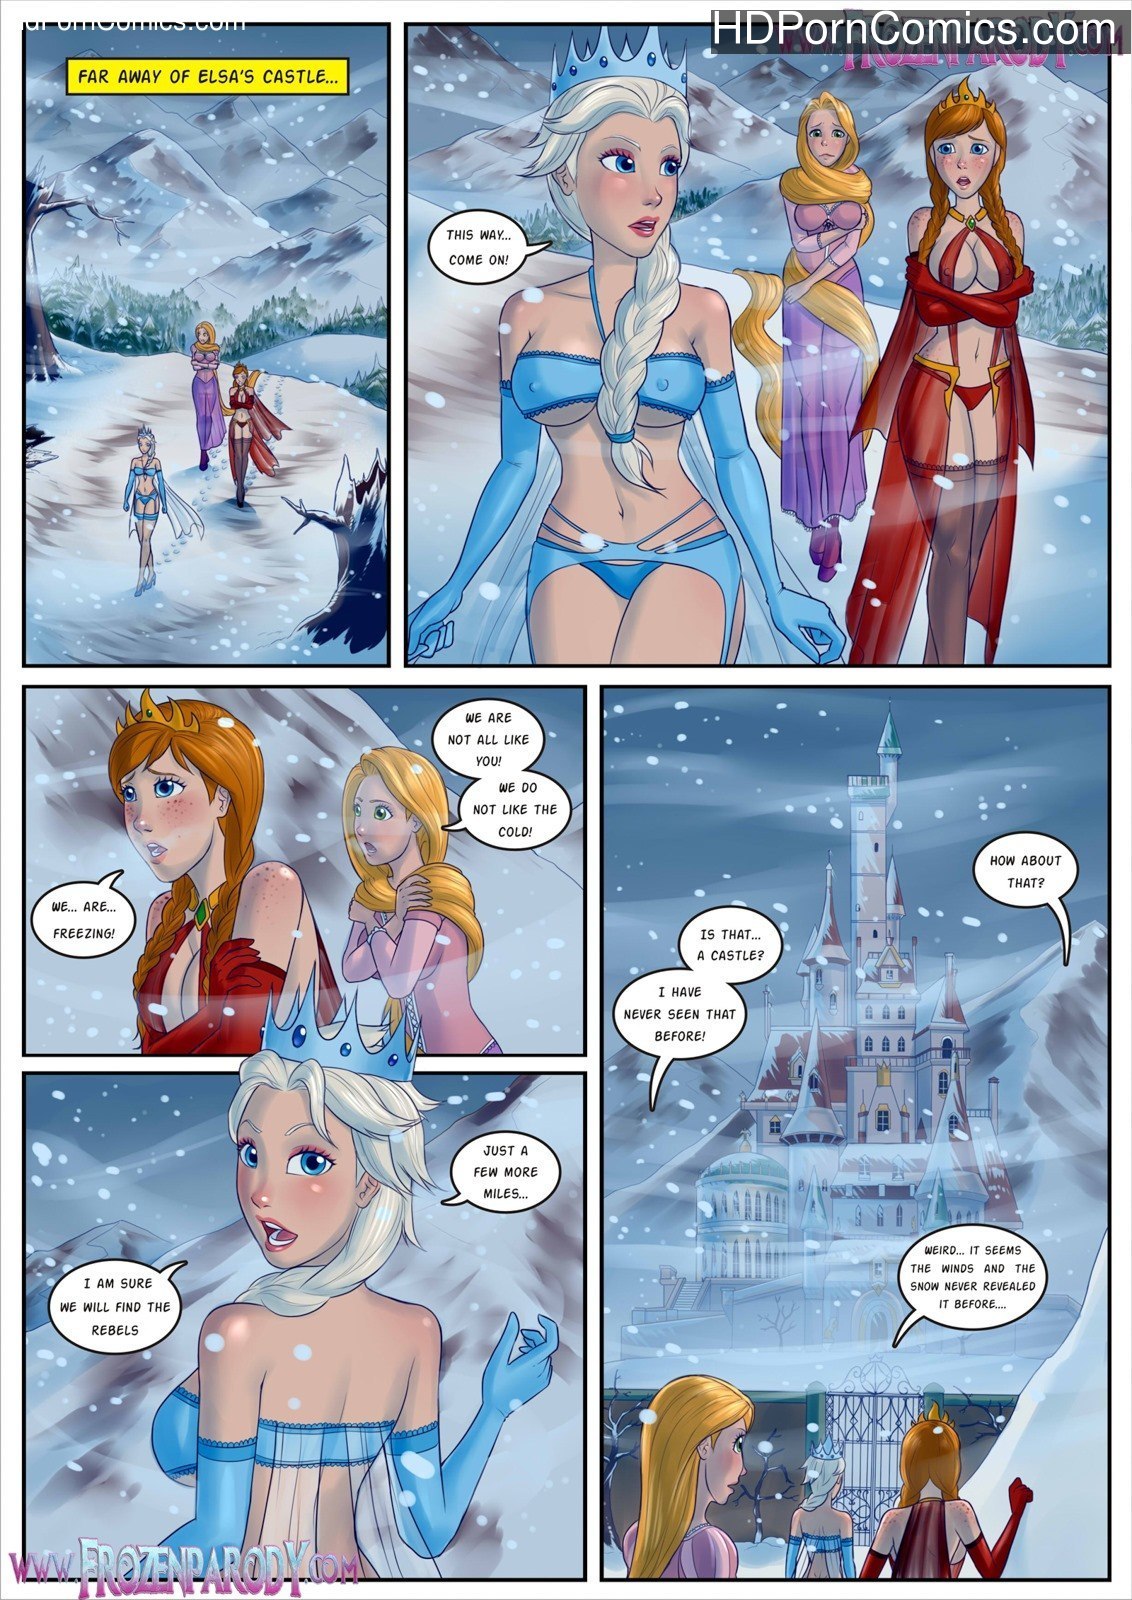 Free Cartoon Porn Frozen - Frozen Parody 13- Beauty And Beast free Cartoon Porn Comic â€“ HD Porn Comics